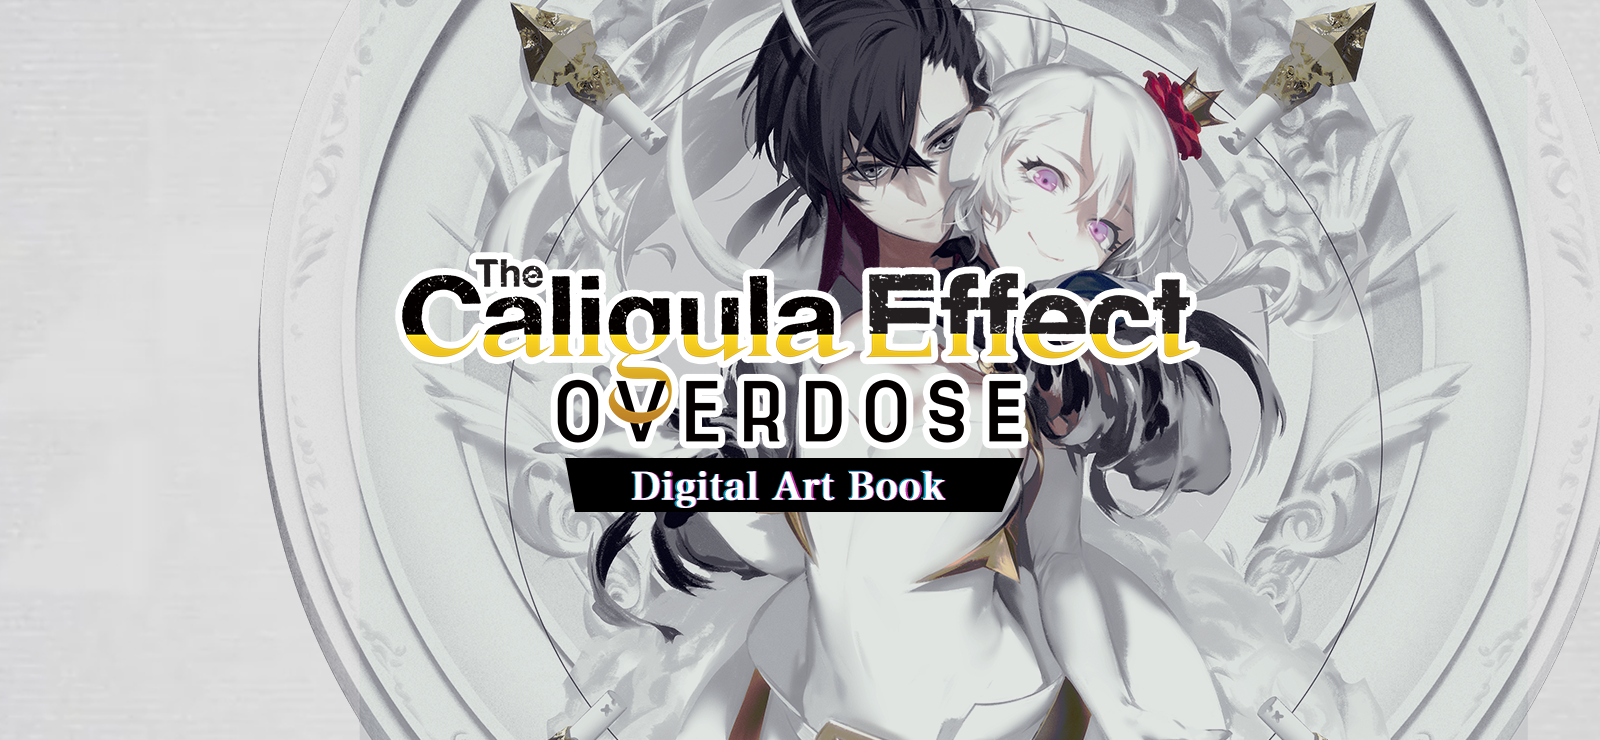 The Caligula Effect: Overdose - Artbook